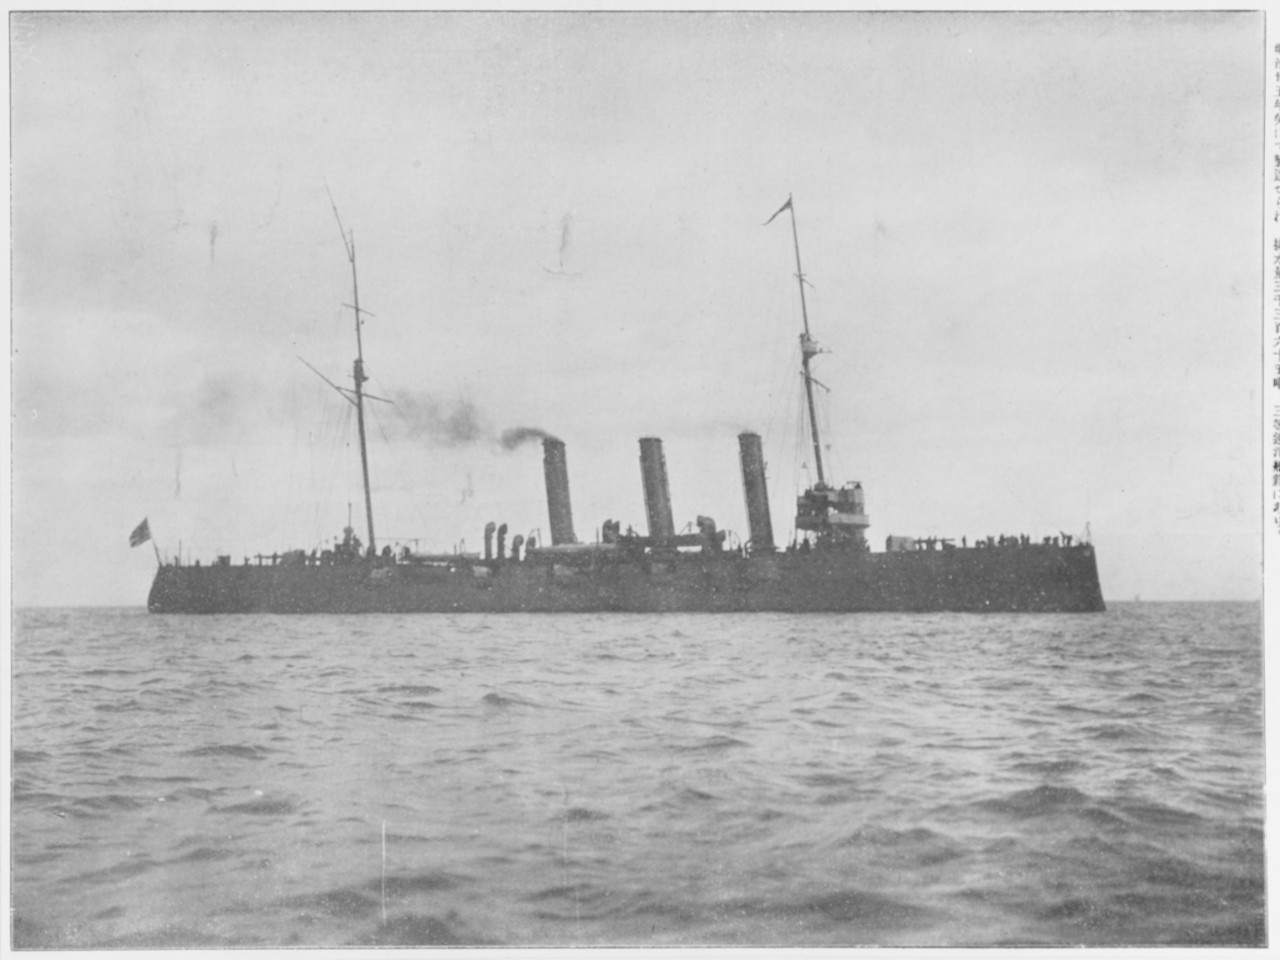 OTOWA (Japanese Cruiser, 1903)